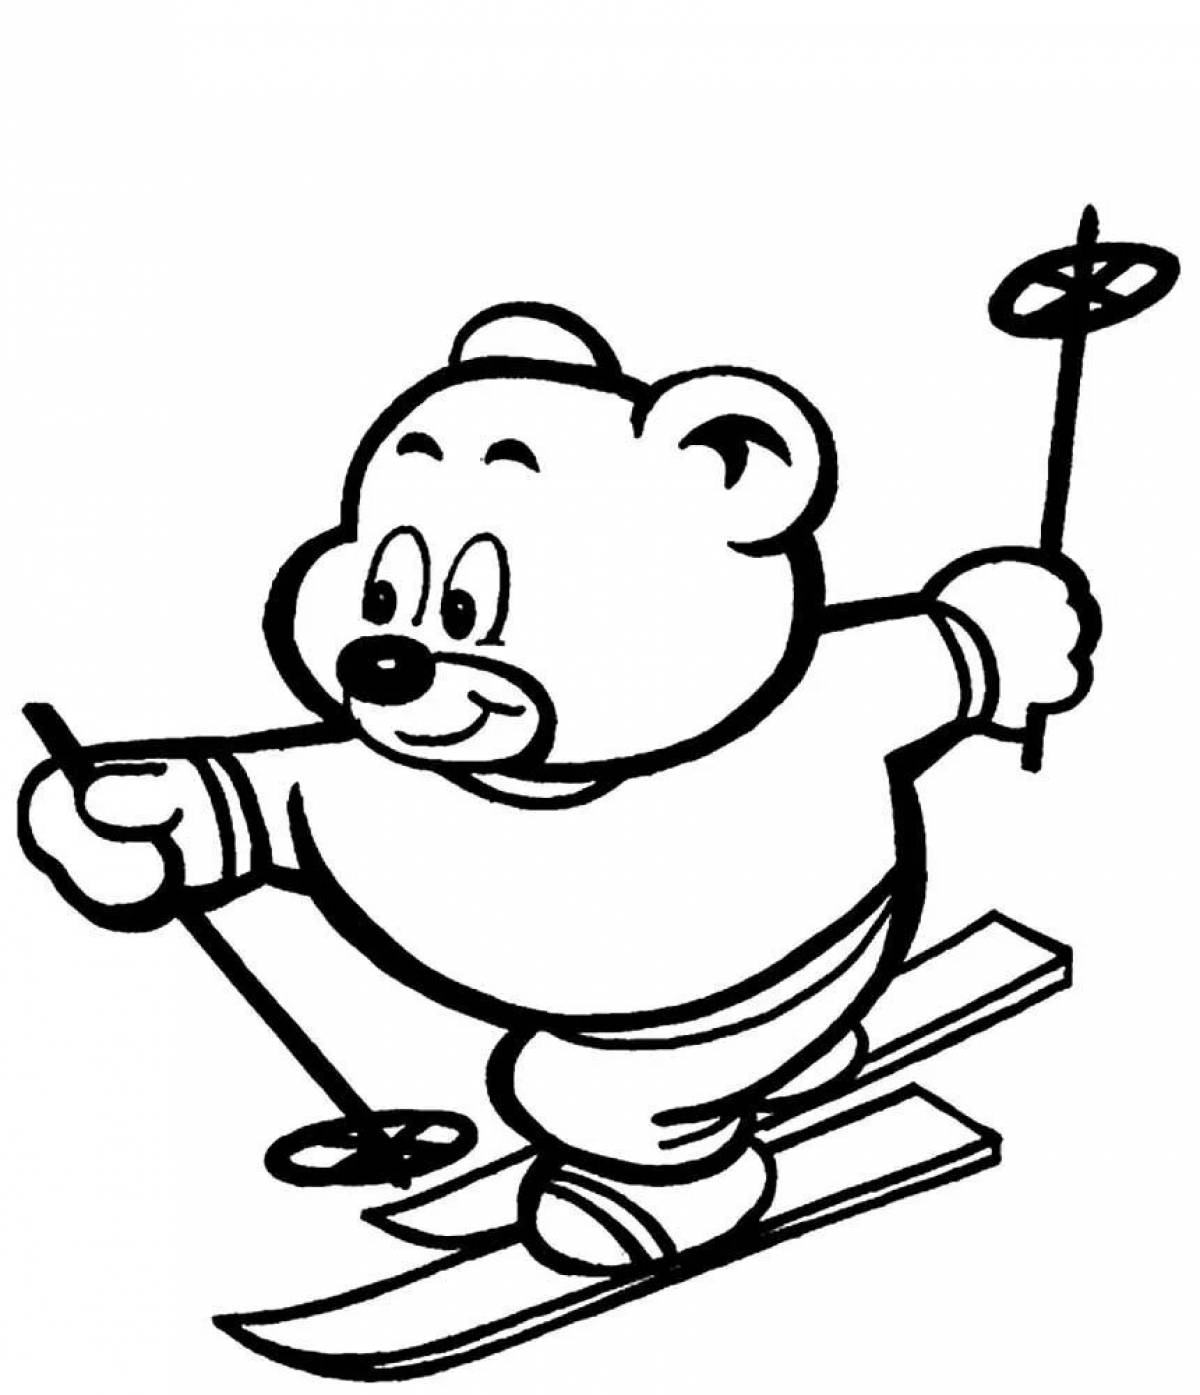 Teddy bear on skis #5